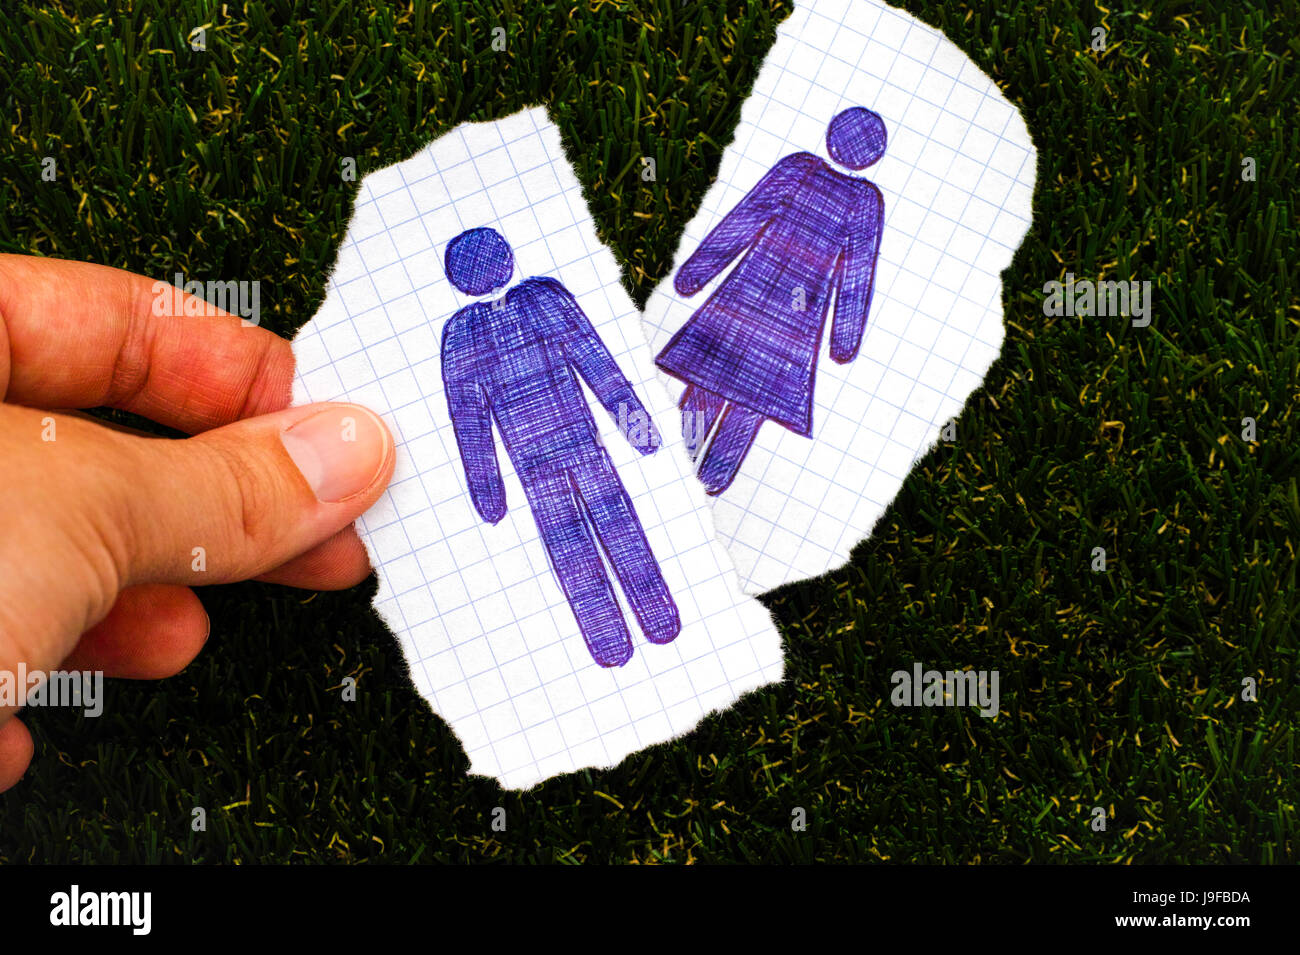 Personne doigts holding feuille de papier, l'homme figure à la main. Autre  feuille de papier, appelée femme figure sur fond d'herbe. Doodle style  Photo Stock - Alamy